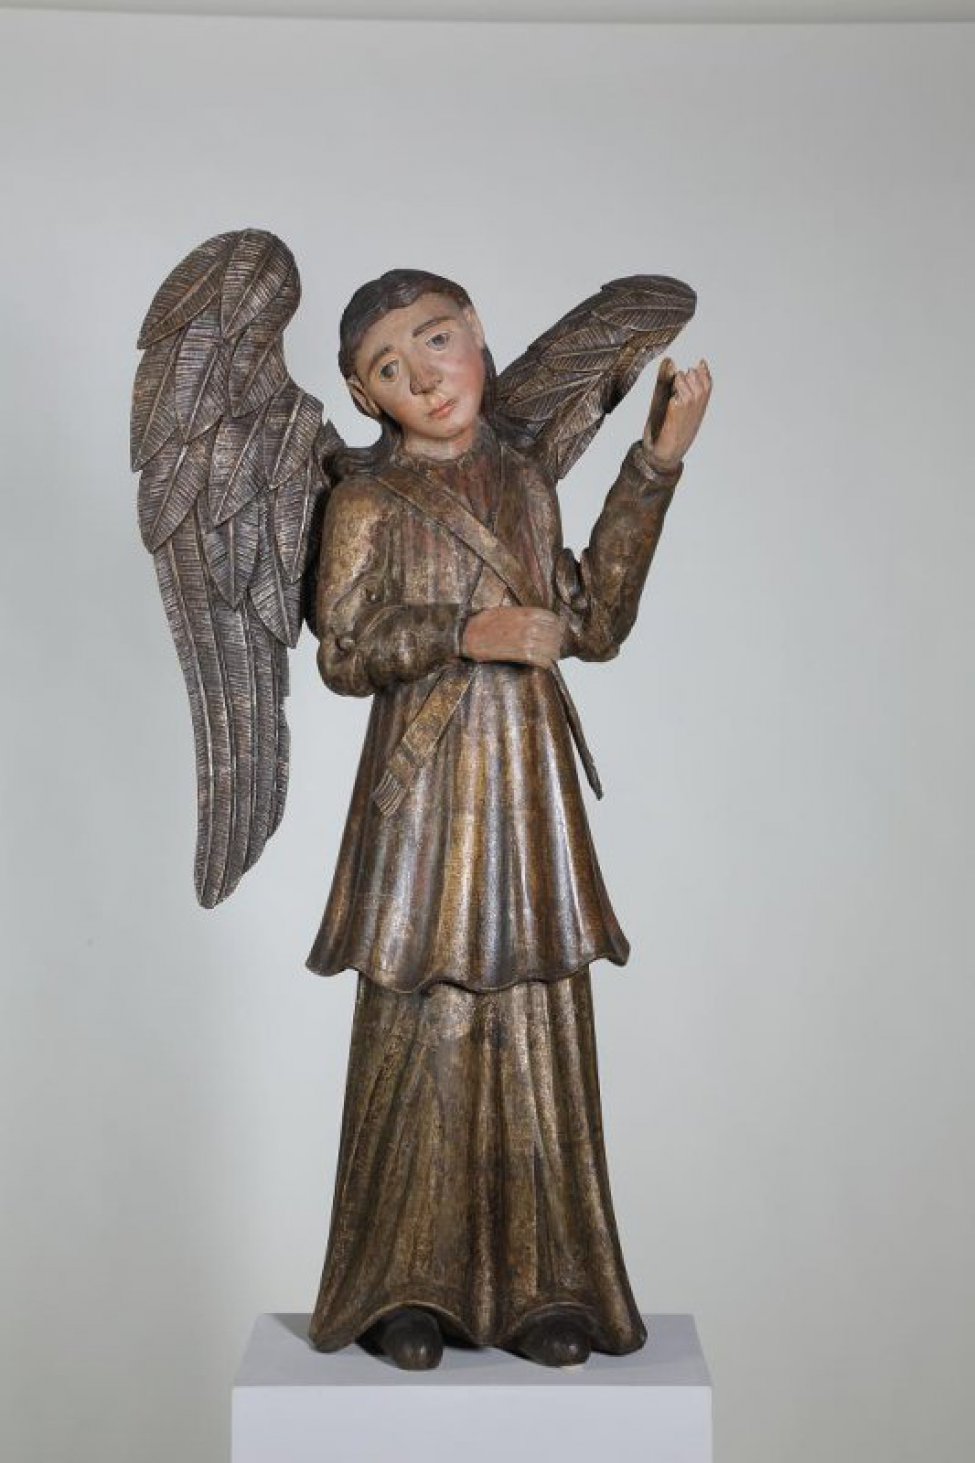 Ангел - парный скульптуре ДС-146, изображен в зеркальной симметрии. На ангеле две одежды золотого цвета. Оба одеяния проработаны крупными вертикальными складками. Крылья посеребрены, их оперение изображено в невысоком рельефе.